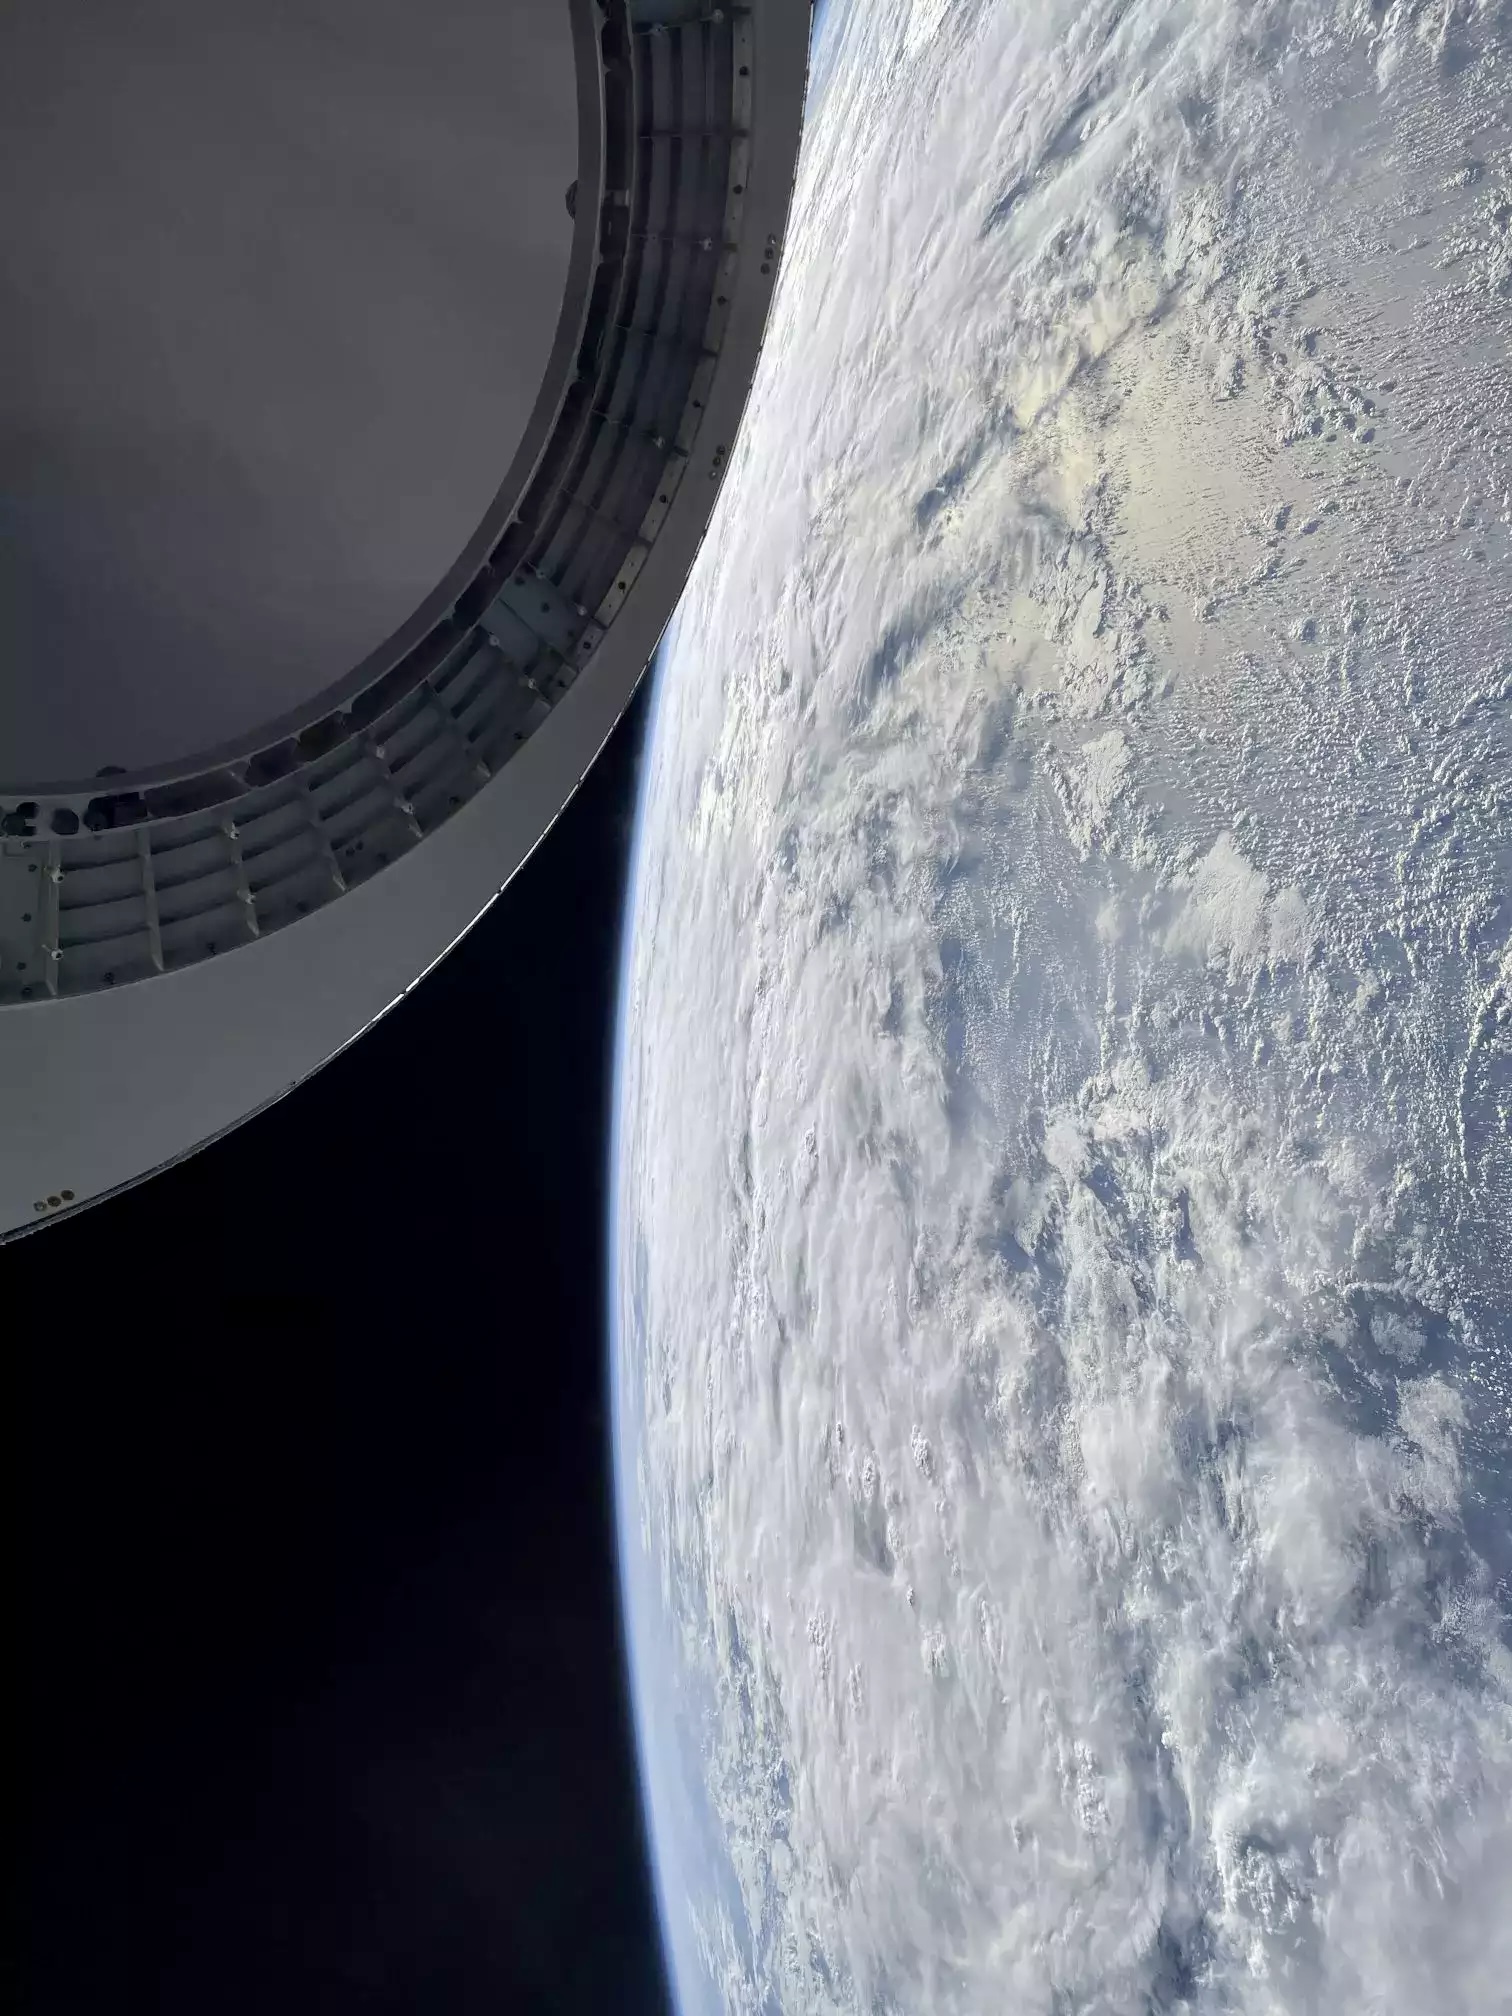 Команда SpaceX опубликовала фото Земли, снятое на iPhone 12